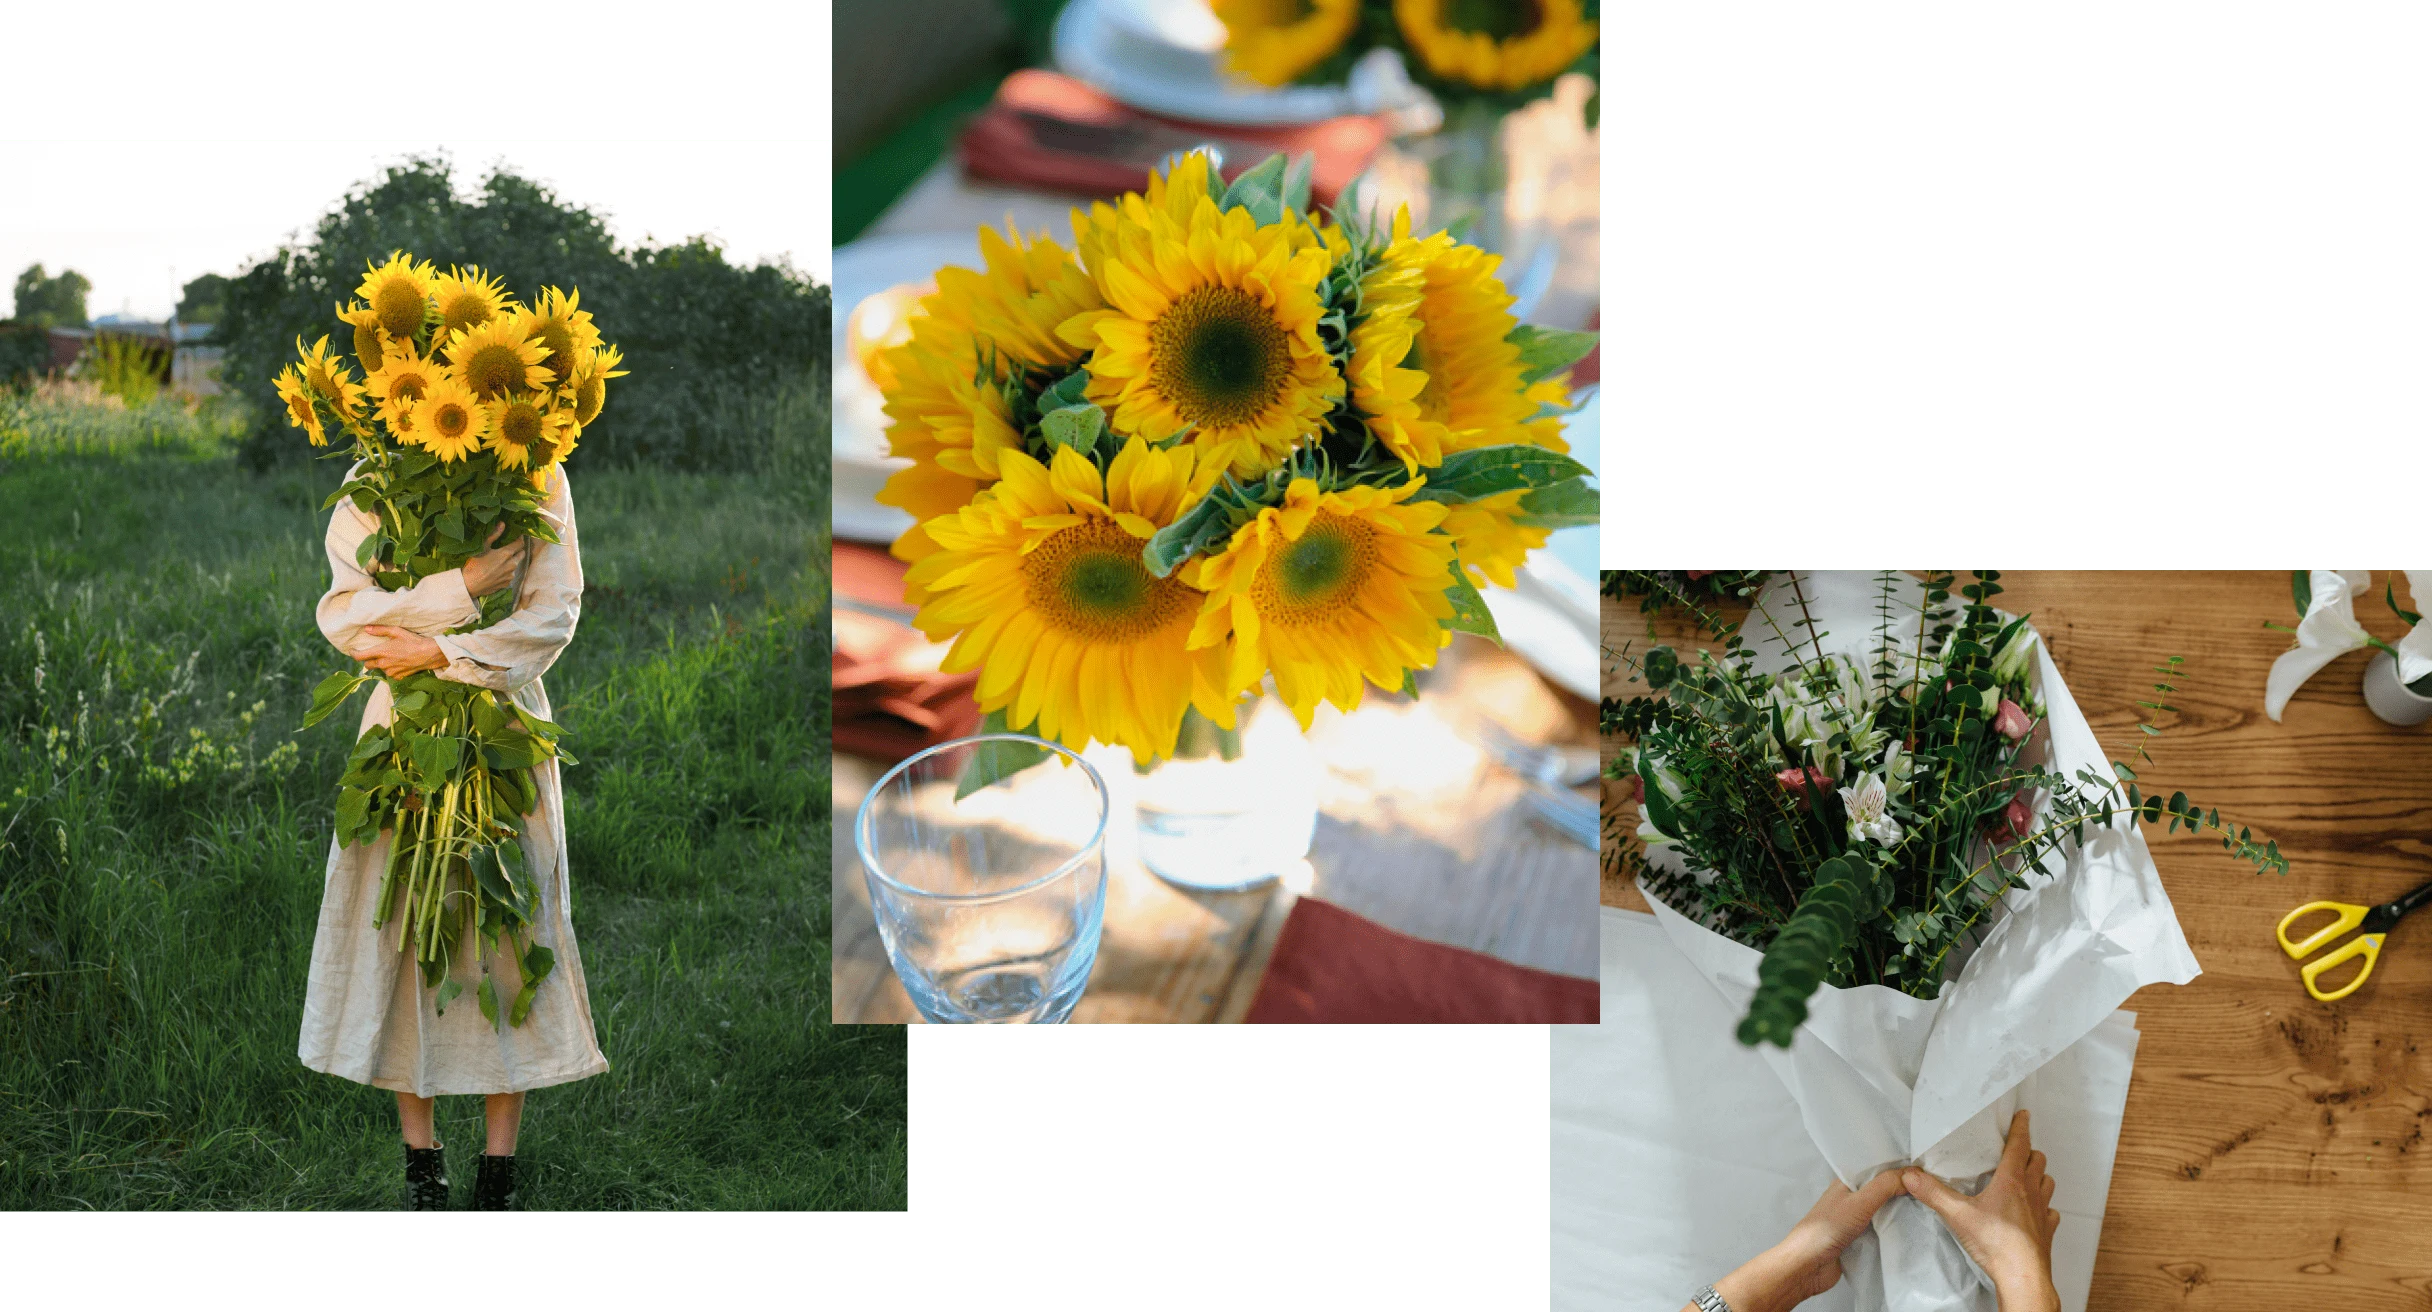 Trzy zdjęcia przedstawiające ułożone żółte kwiaty i zielone liście